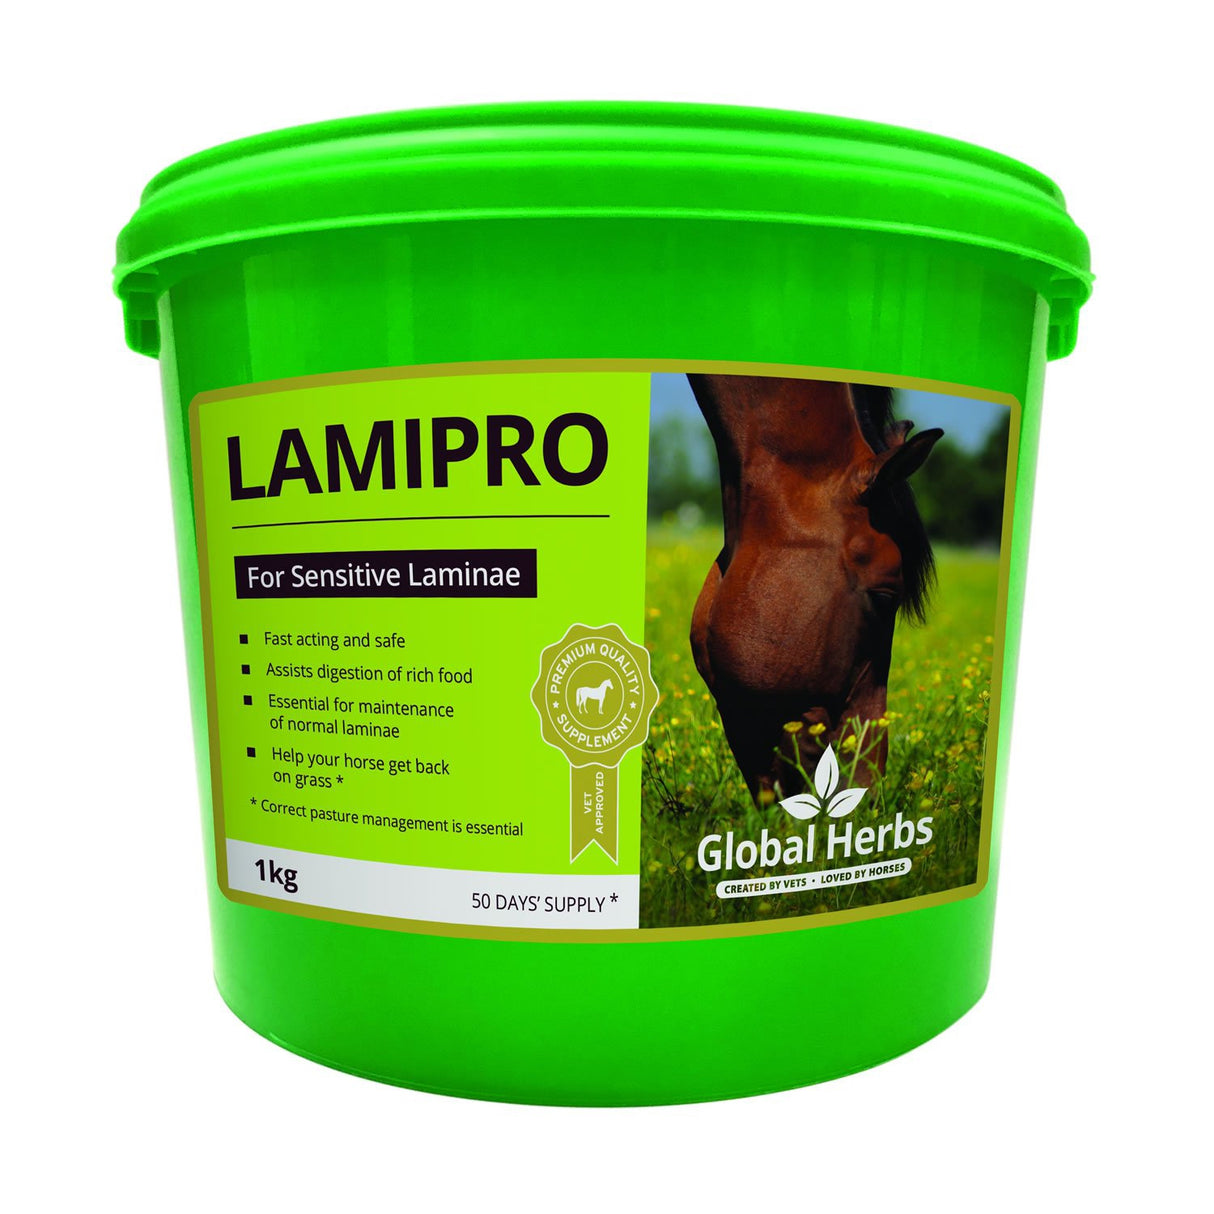 Global Herbs LamiPro Powder